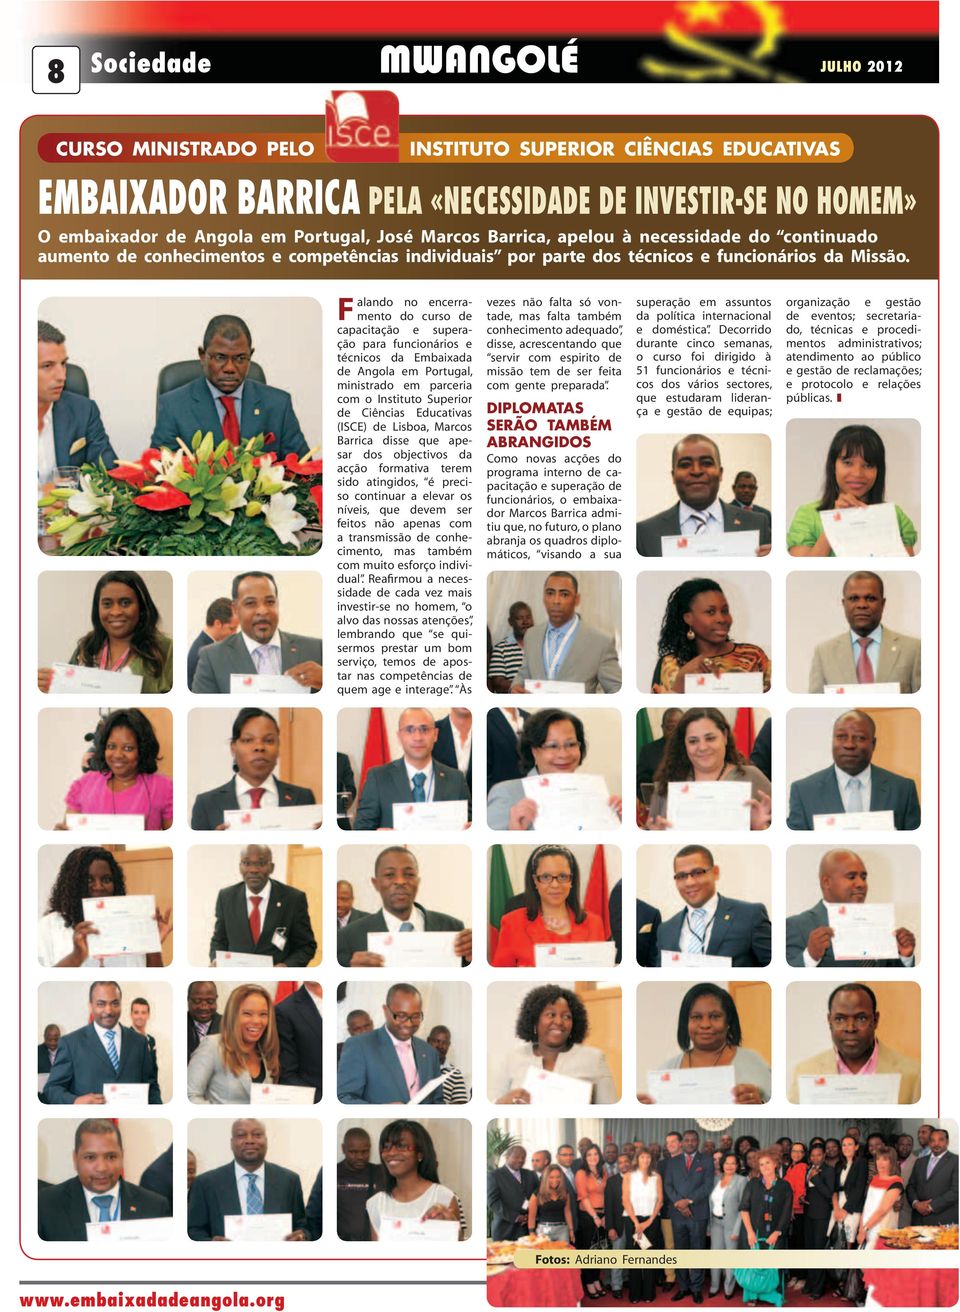 Falando no encerramento do curso de capacitação e superação para funcionários e técnicos da Embaixada de Angola em Portugal, ministrado em parceria com o Instituto Superior de Ciências Educativas